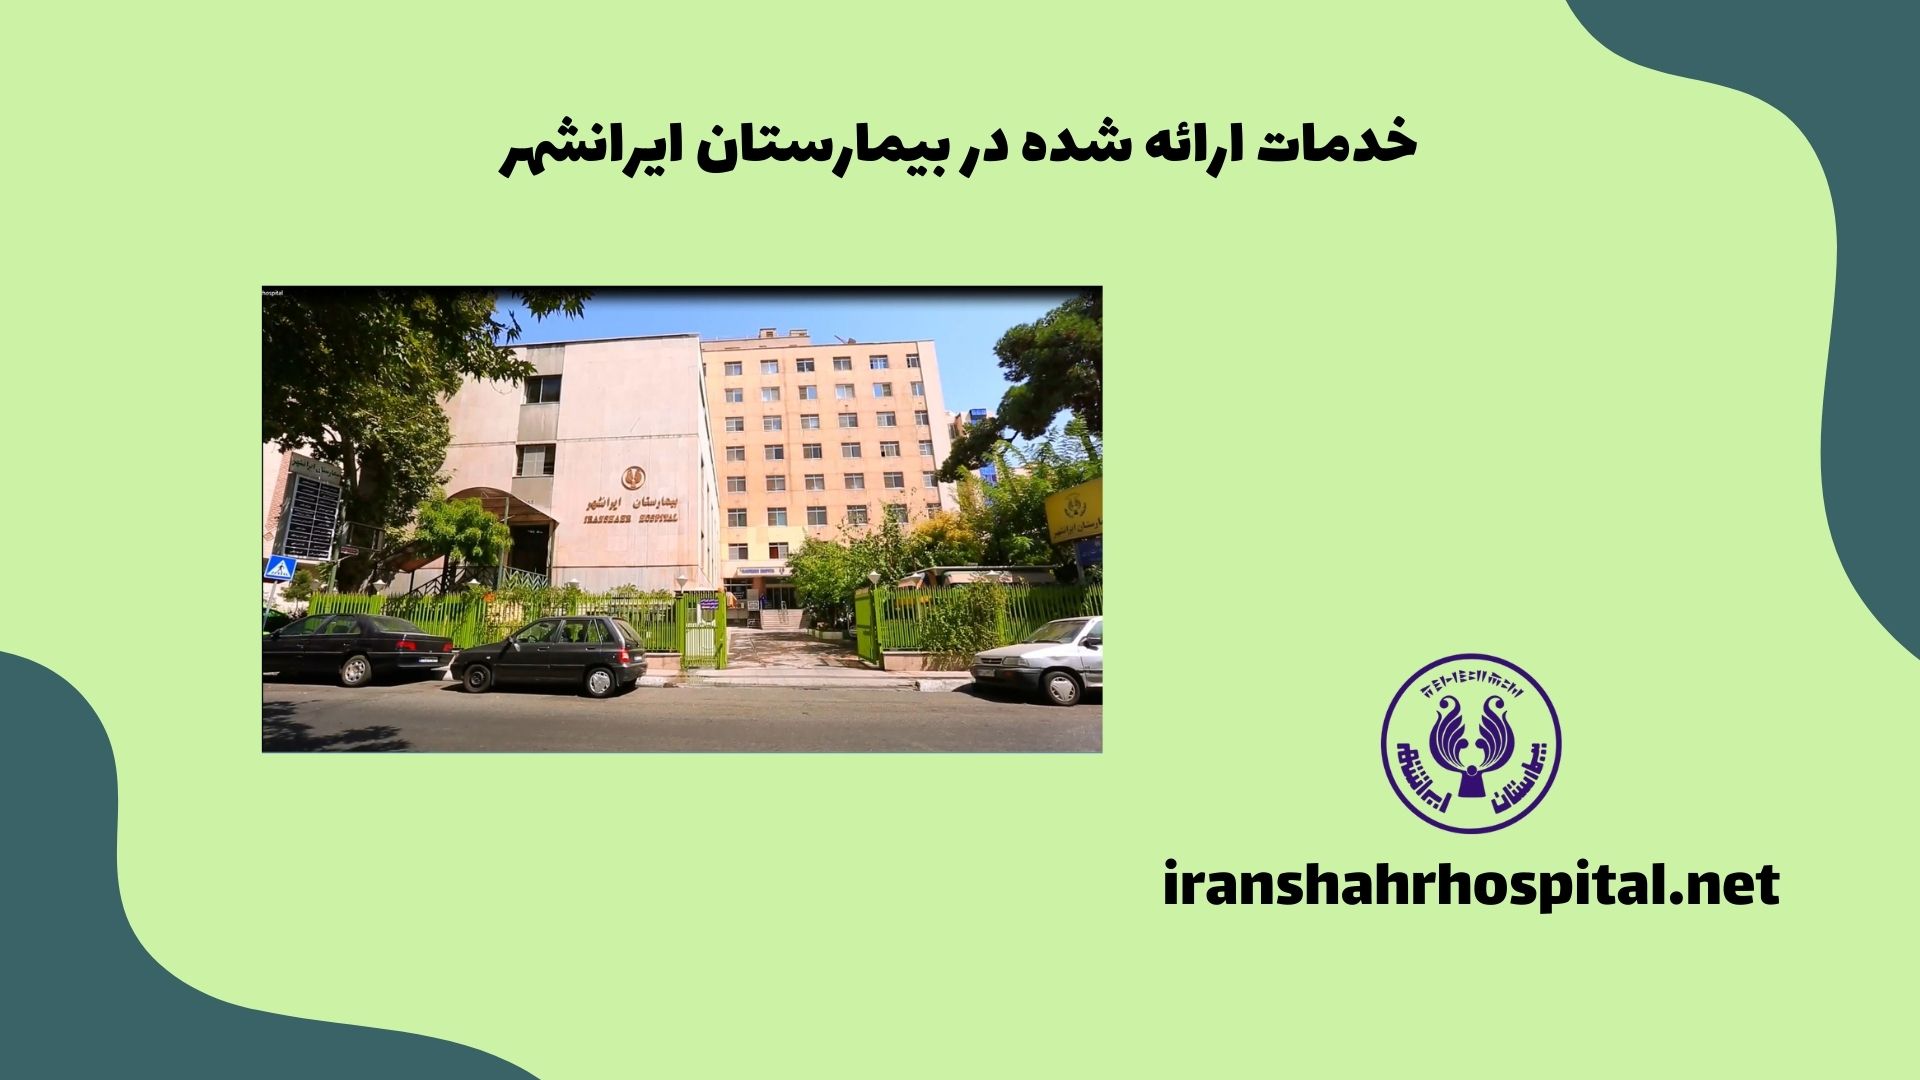 خدمات ارائه شده در بیمارستان ایرانشهر